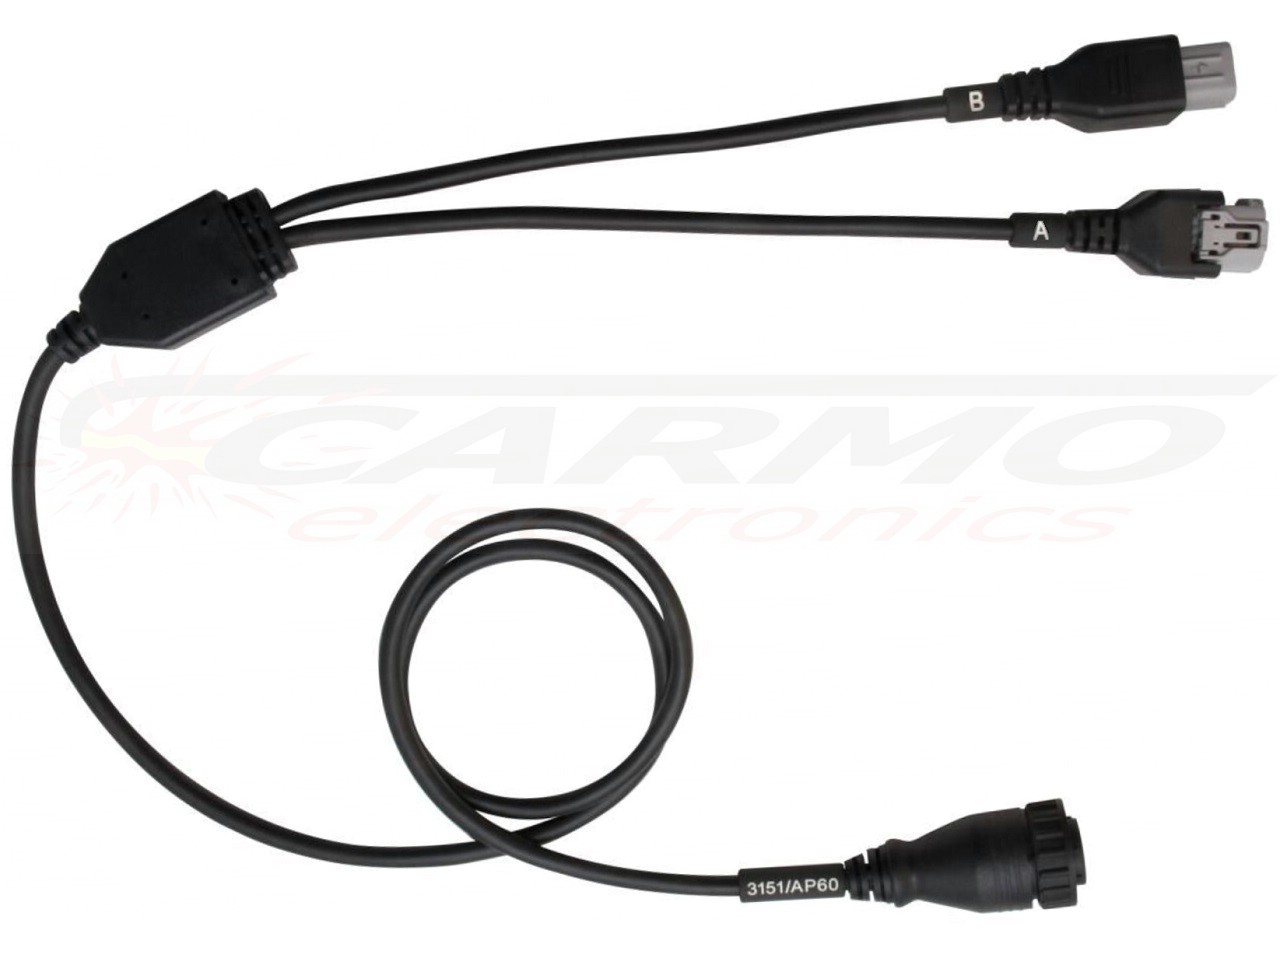 3151/AP60 Motorcycle Aprilia Moto Guzzi diagnostic cable TEXA-3909911 - Click Image to Close